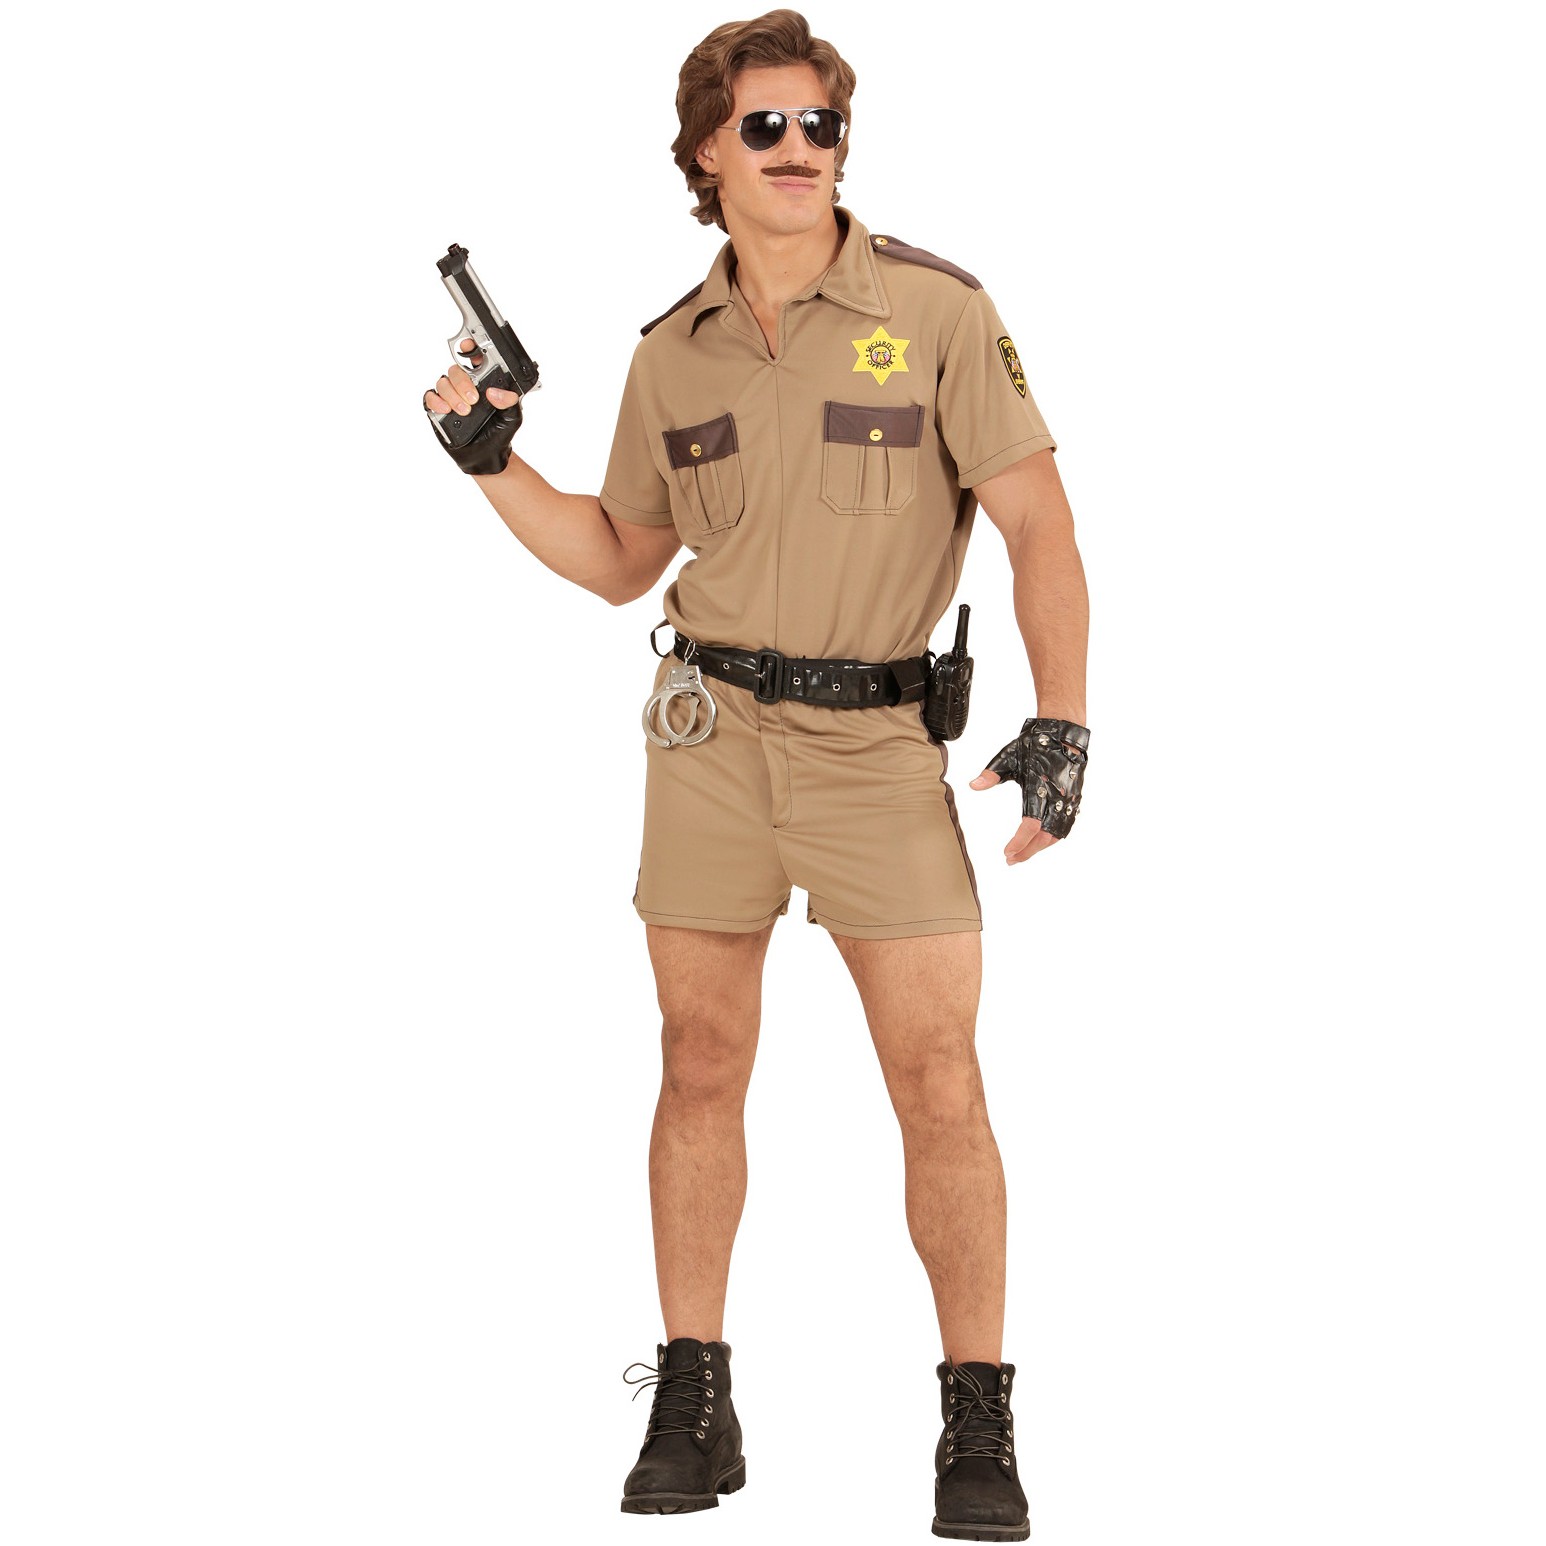 XL neu Kalifornischer Highway Streifenpolizist Polizeikostüm Kostüm Polizei Gr 